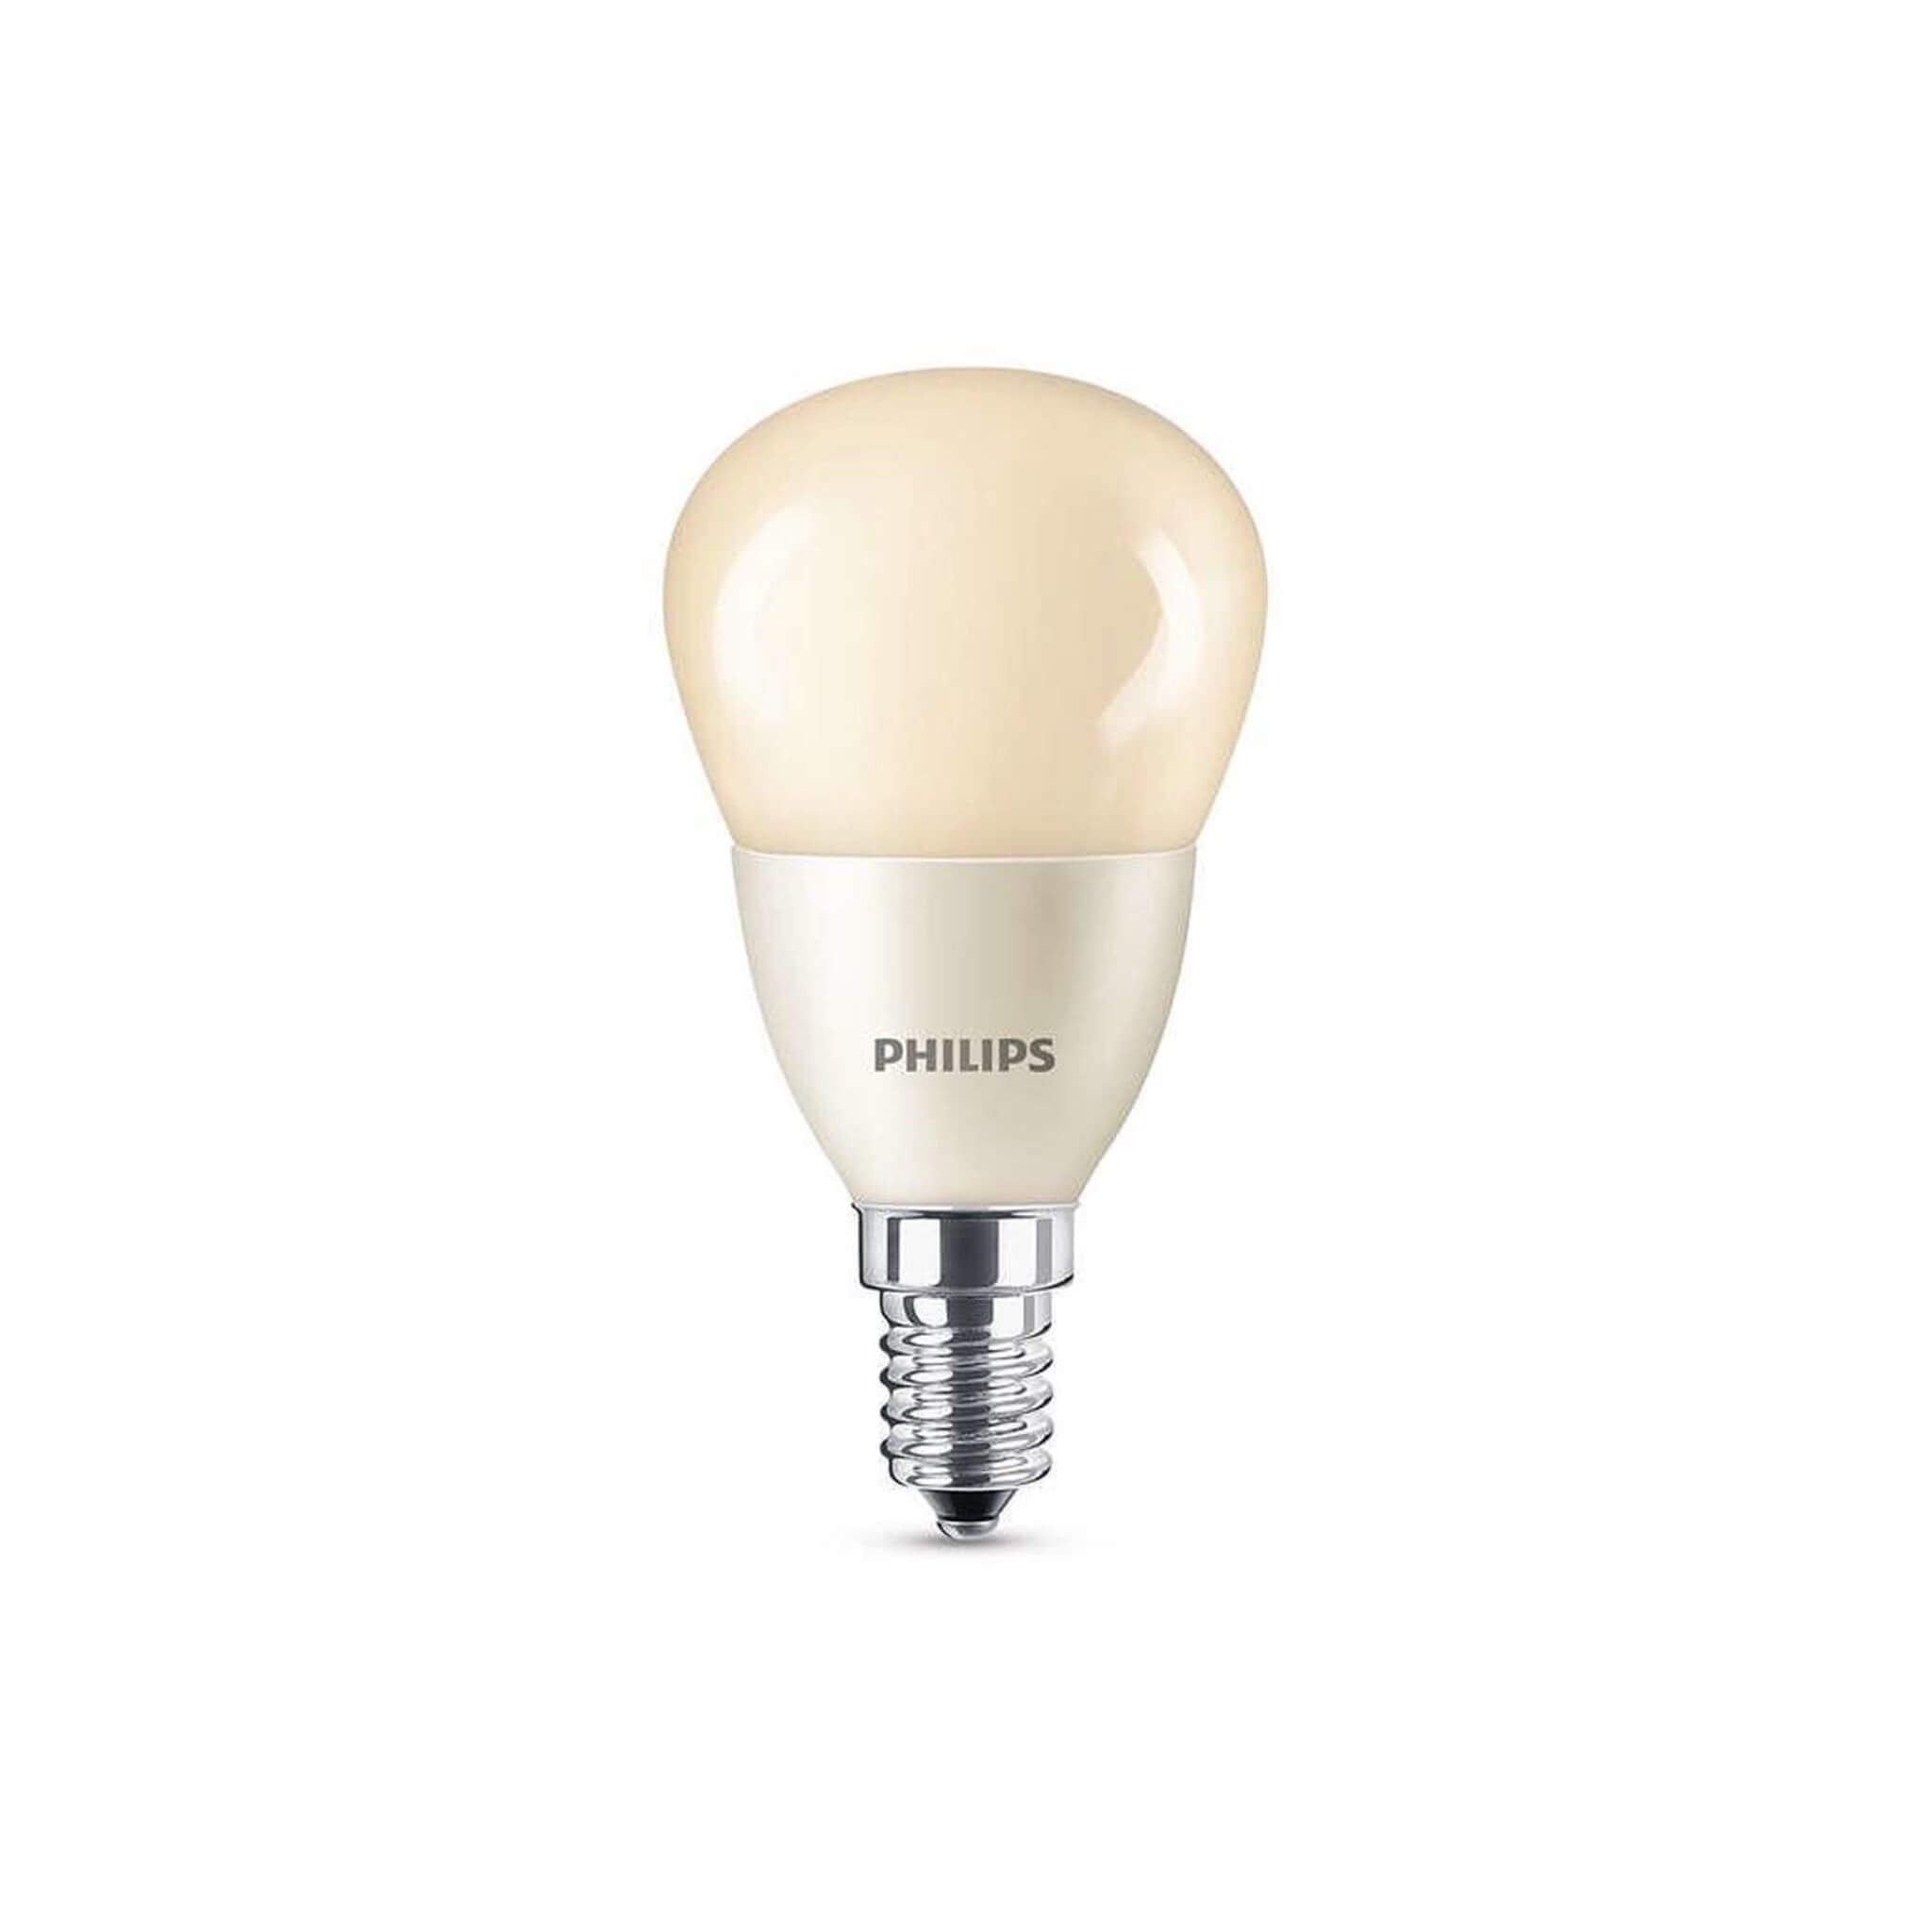 Kerkbank park besluiten Philips LED Lamp Flame - E14 fitting - Dimbaar warm wit licht - 4W (15 – LED .nl